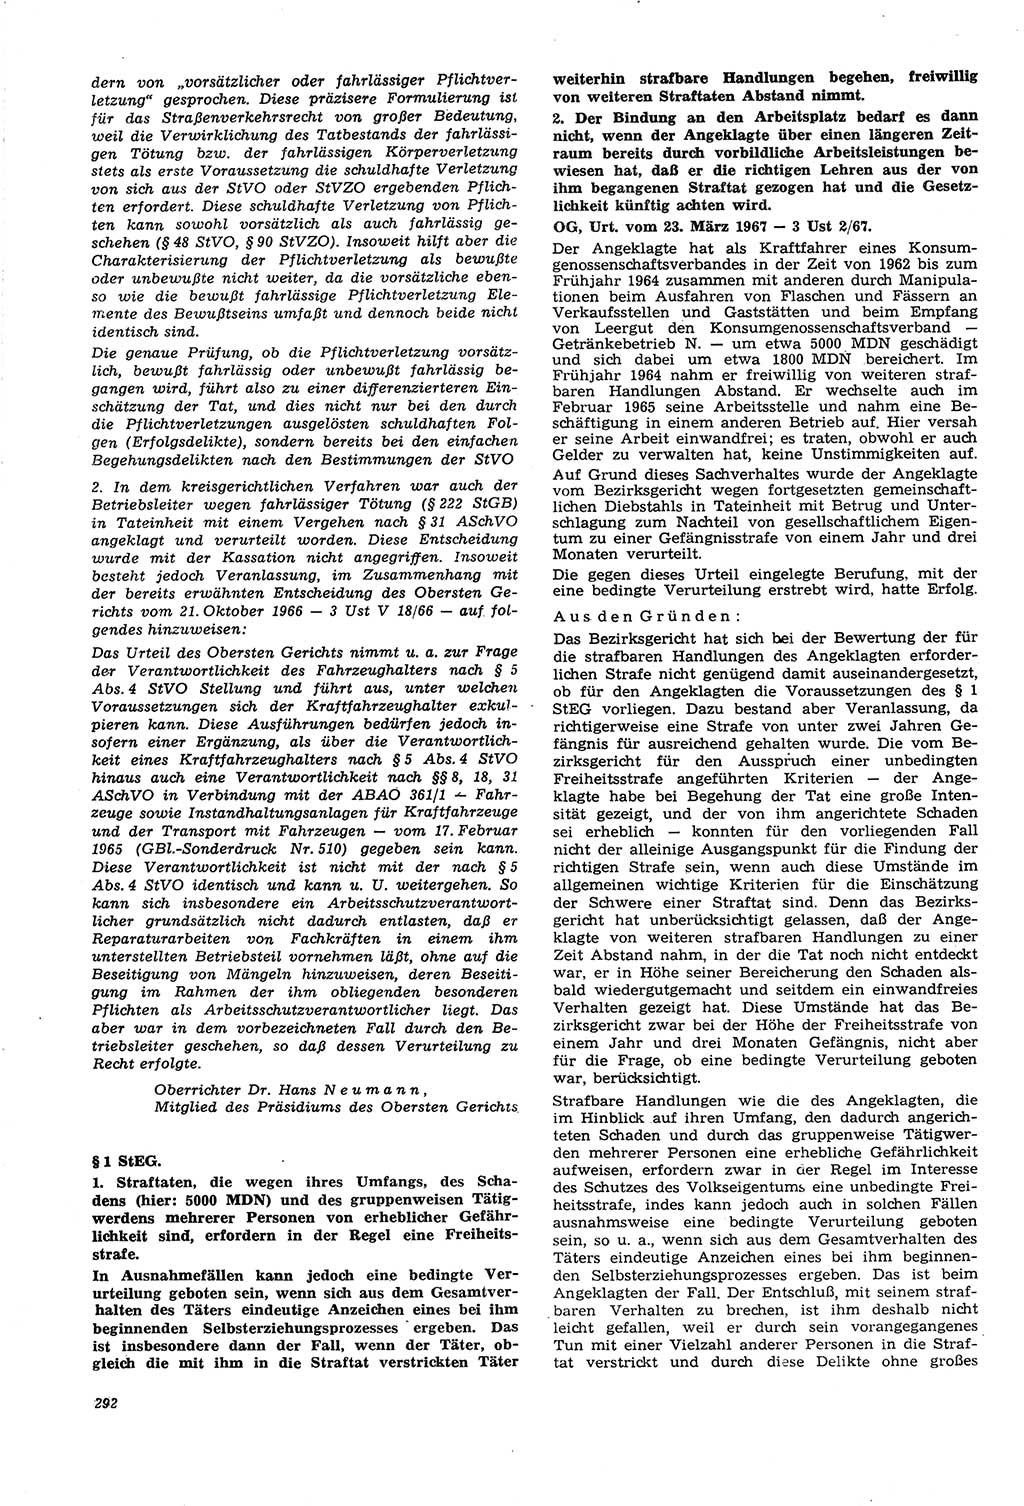 Neue Justiz (NJ), Zeitschrift für Recht und Rechtswissenschaft [Deutsche Demokratische Republik (DDR)], 21. Jahrgang 1967, Seite 292 (NJ DDR 1967, S. 292)